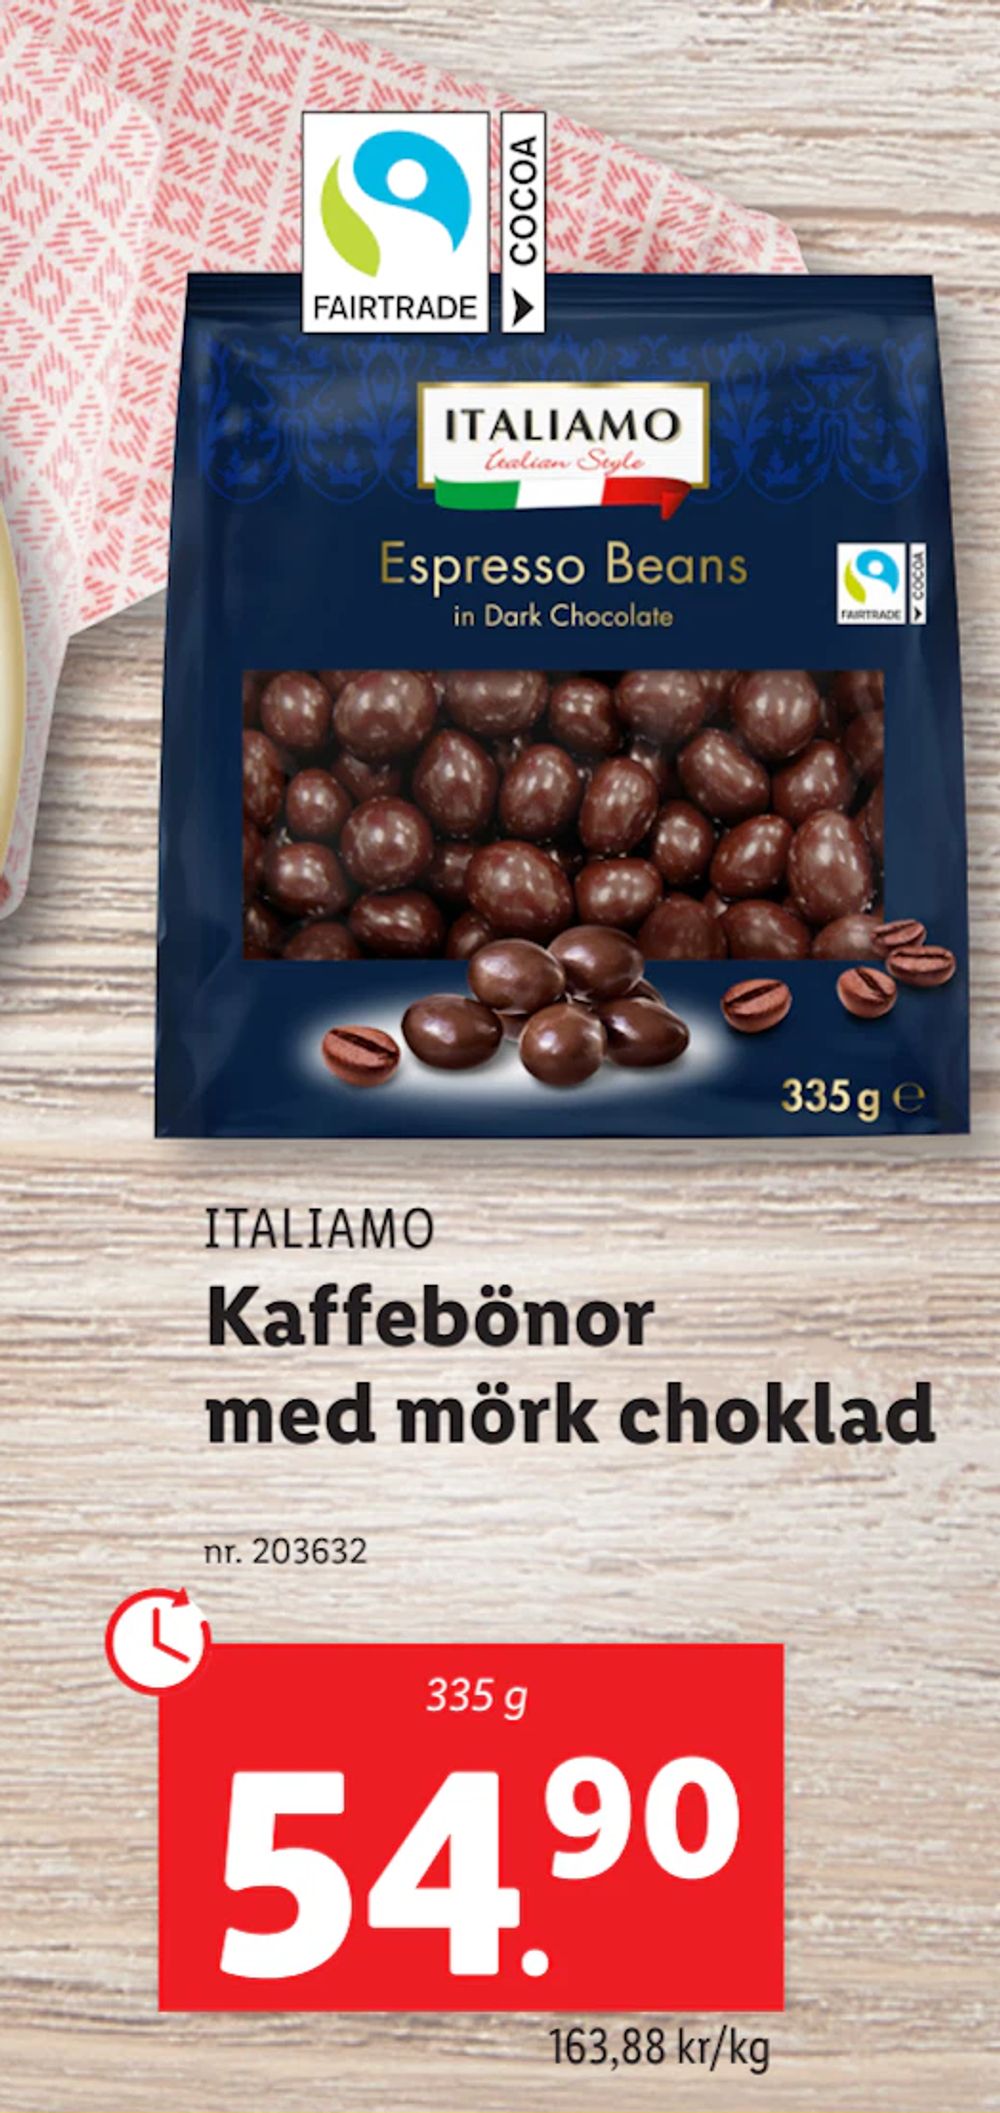 Erbjudanden på Kaffebönor med mörk choklad från Lidl för 54,90 kr